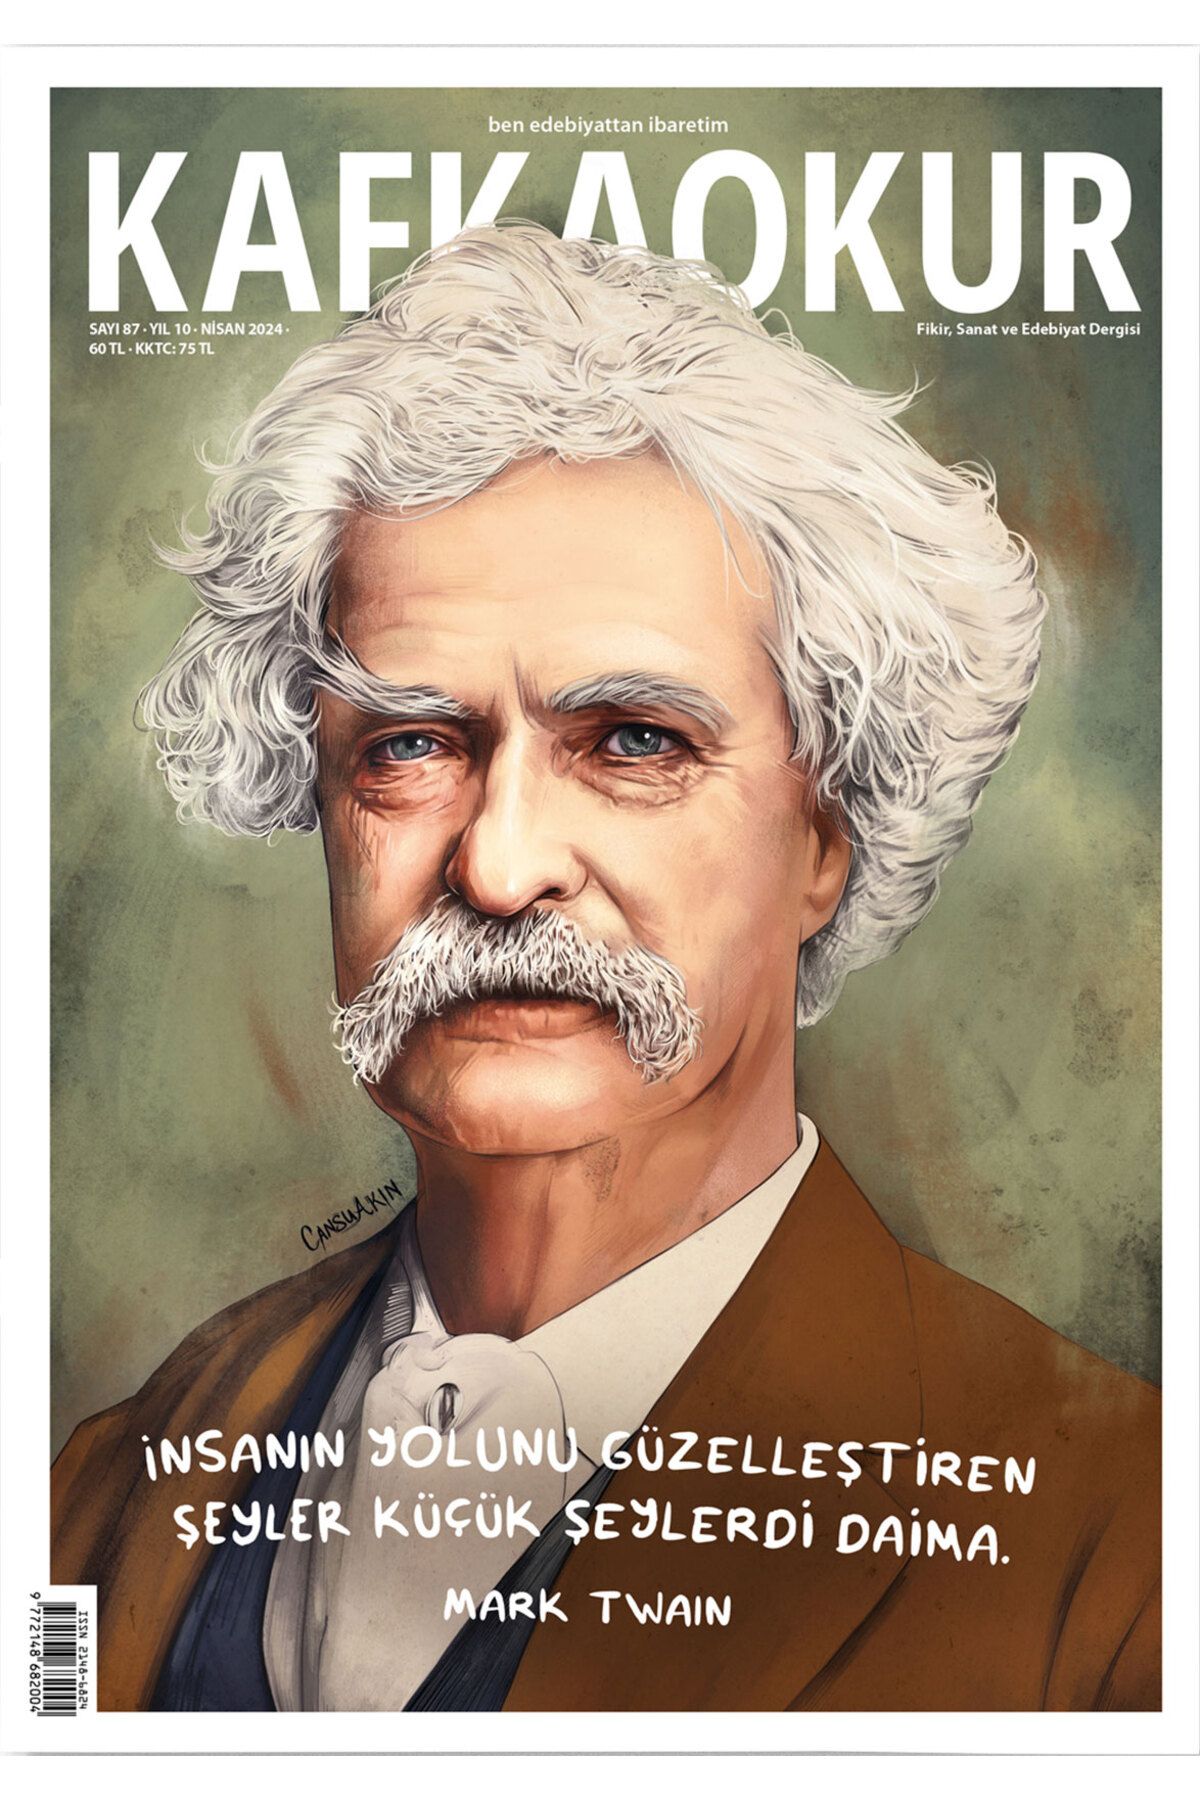 KafkaOkur Dergisi Sayı 87 - Mark Twain - Nisan 2024